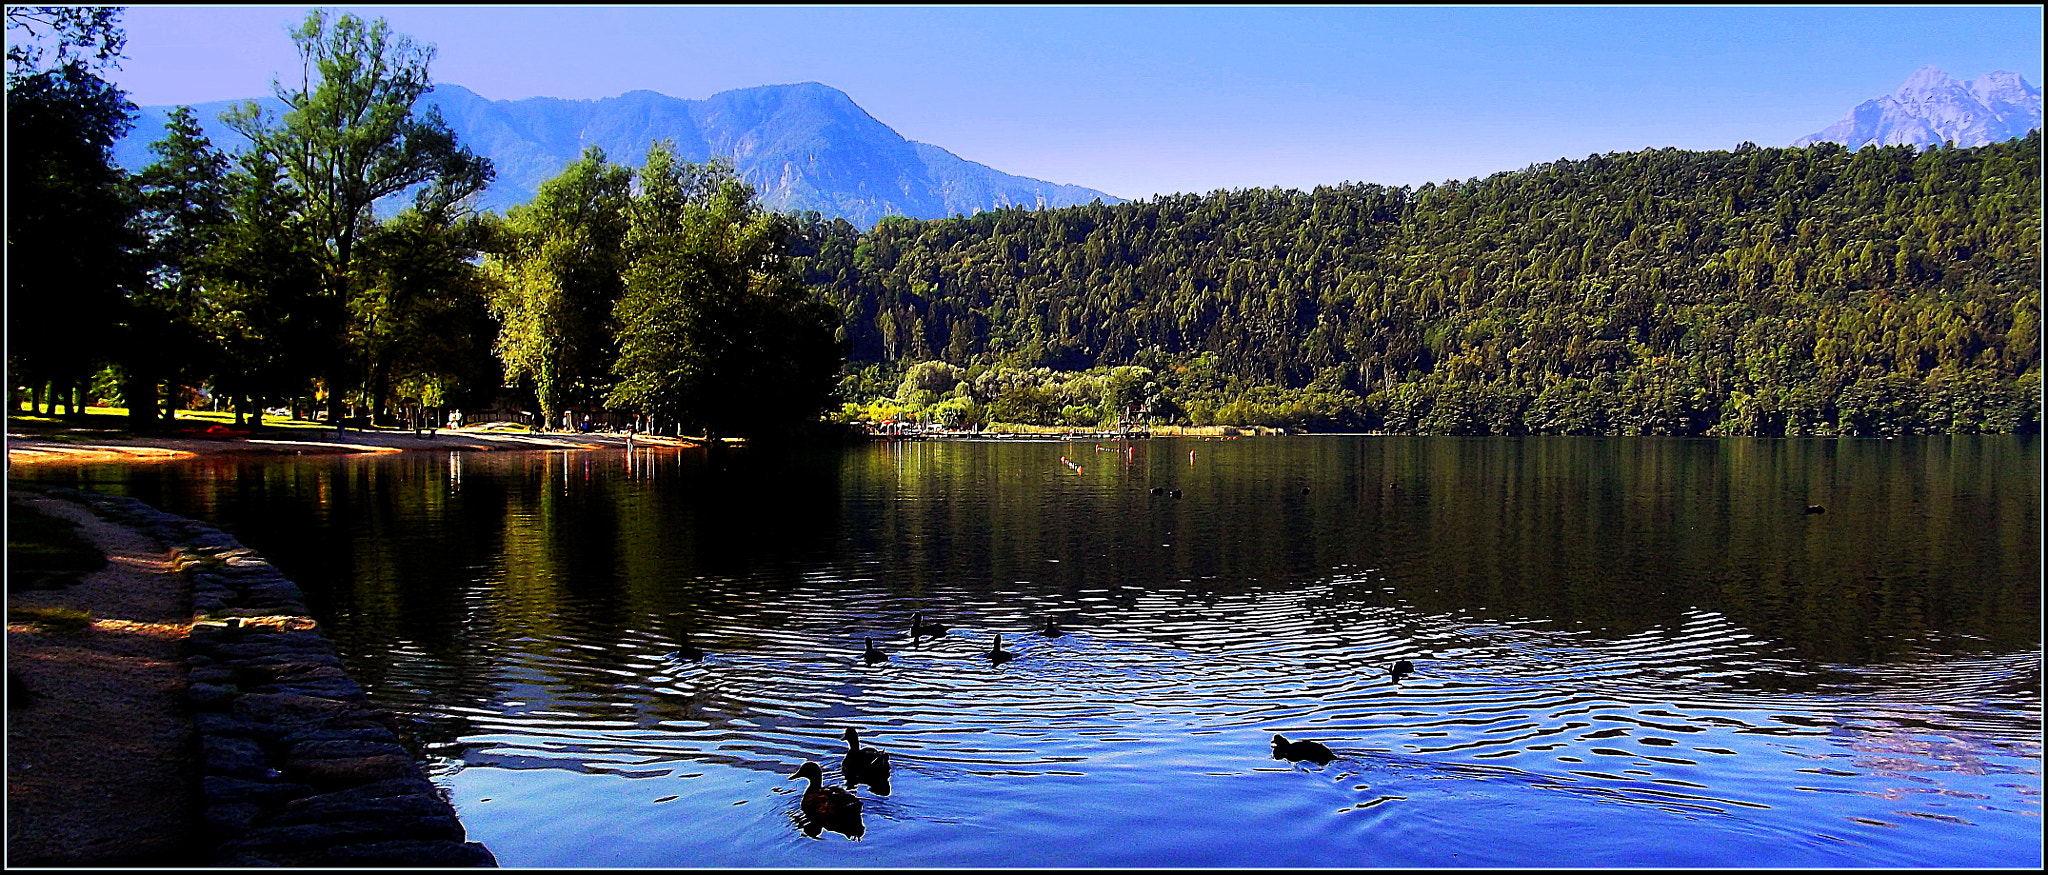 Fujifilm FinePix JX250 sample photo. Il bel lago di levico terme, natura meravigliosa all'alba. photography